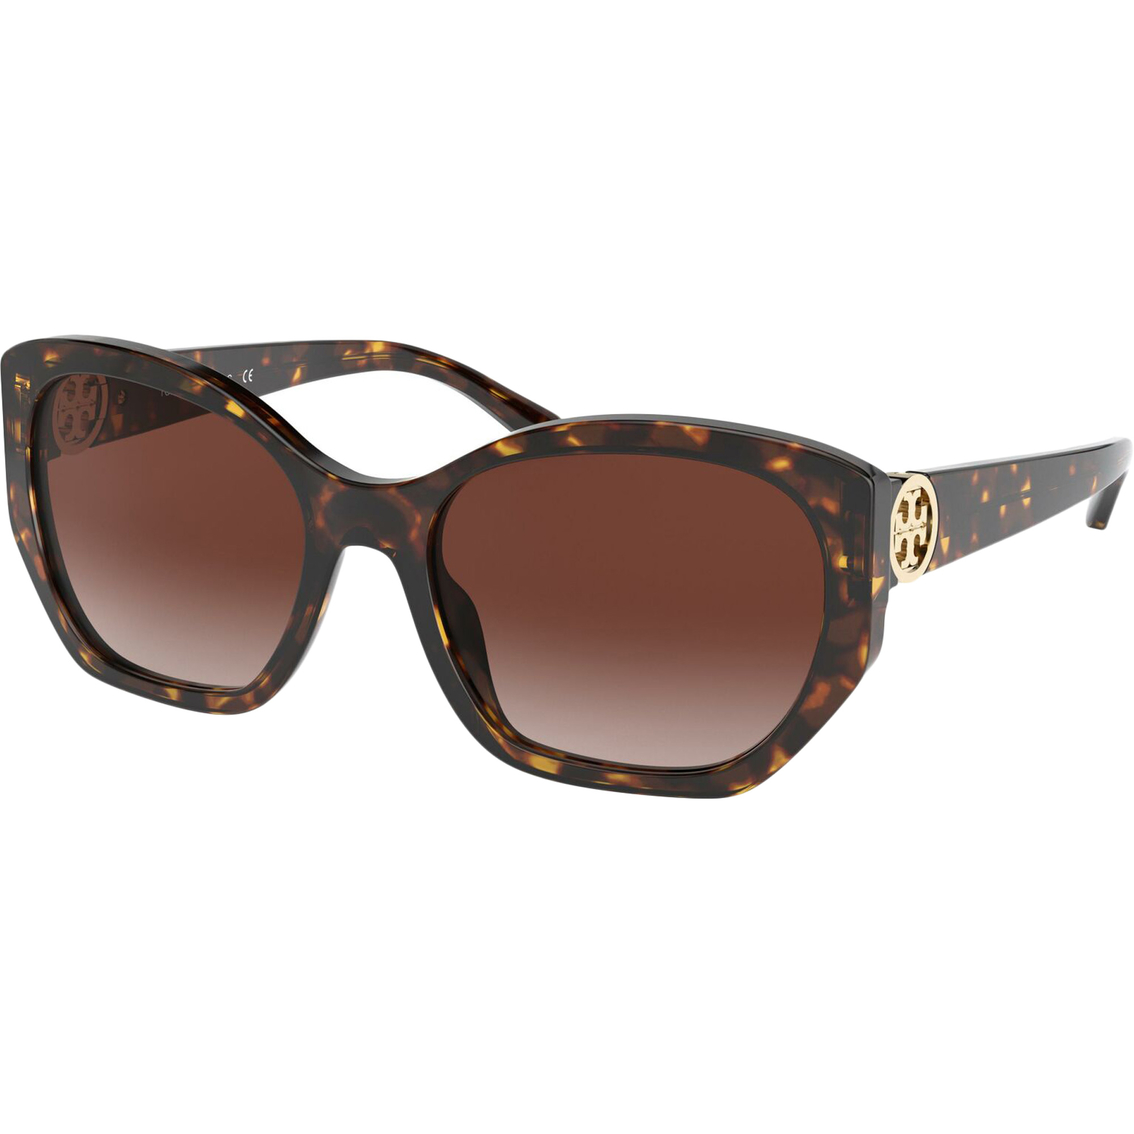 Tory Burch Irregular Sunglasses 0ty7141 | Women's Sunglasses | Swim ...